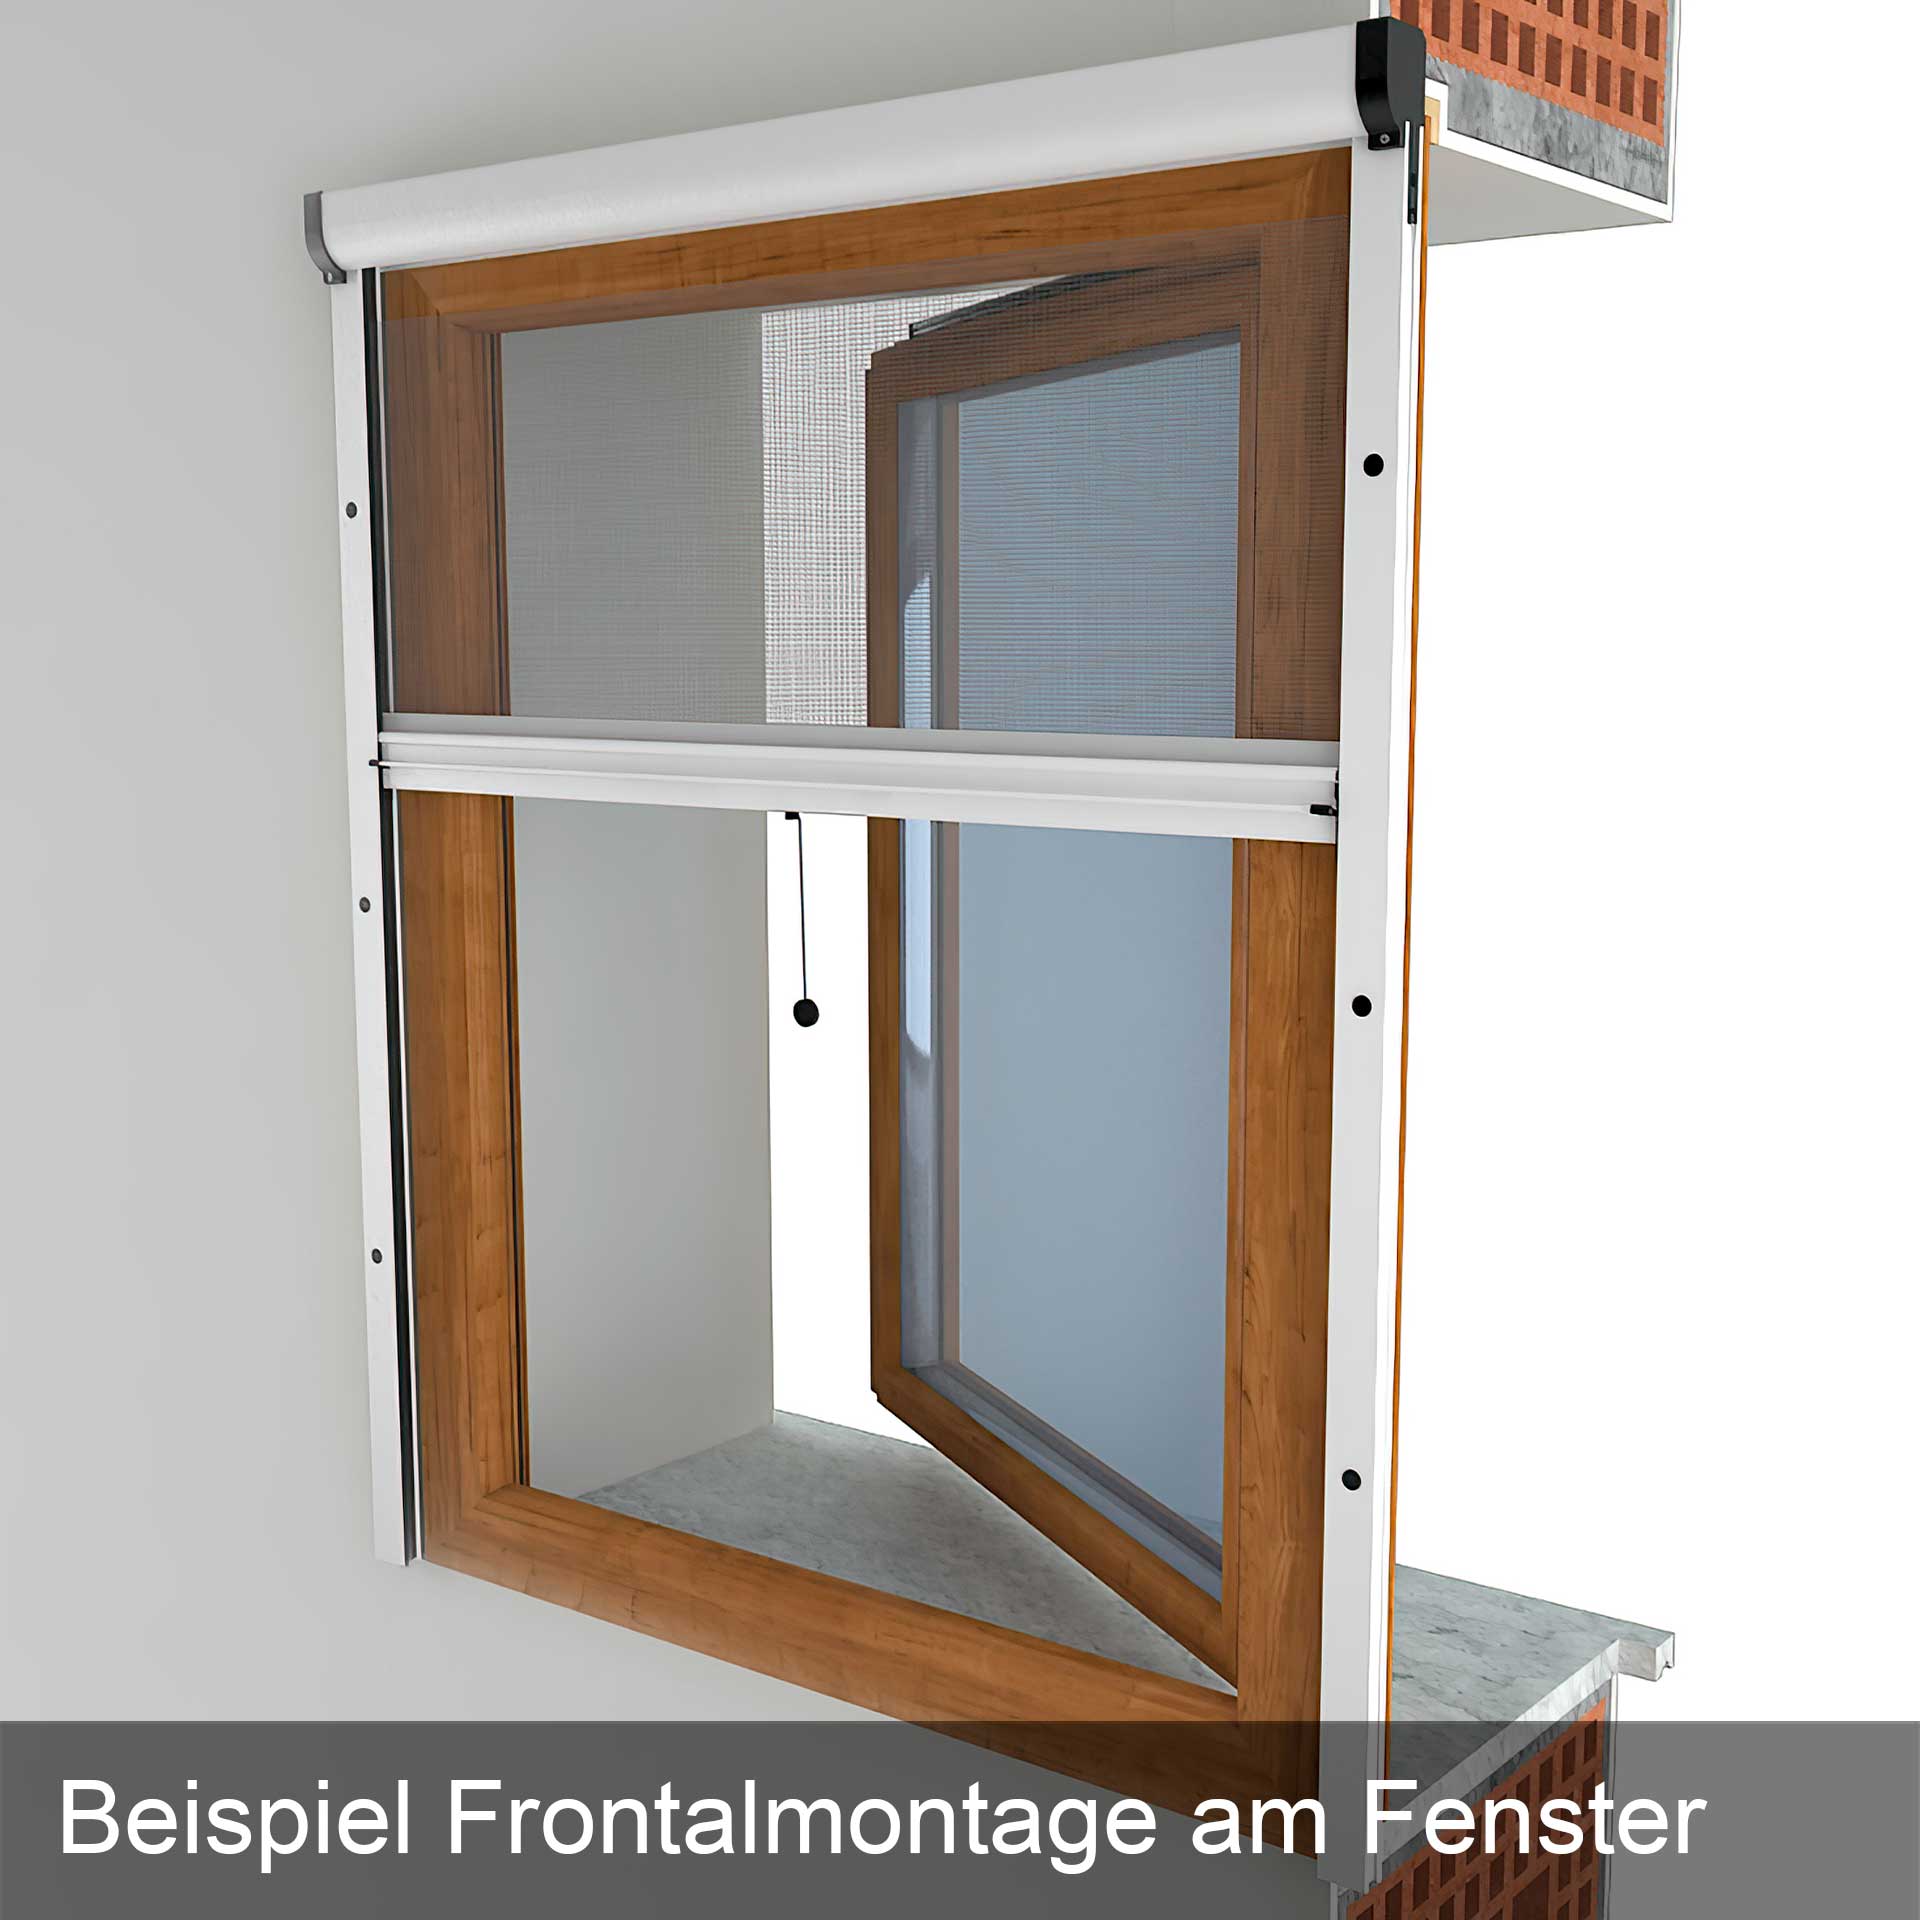 Insektenschutzrollo für Fenster | Rollo-Kasten auch zum Einklemmen | Adria